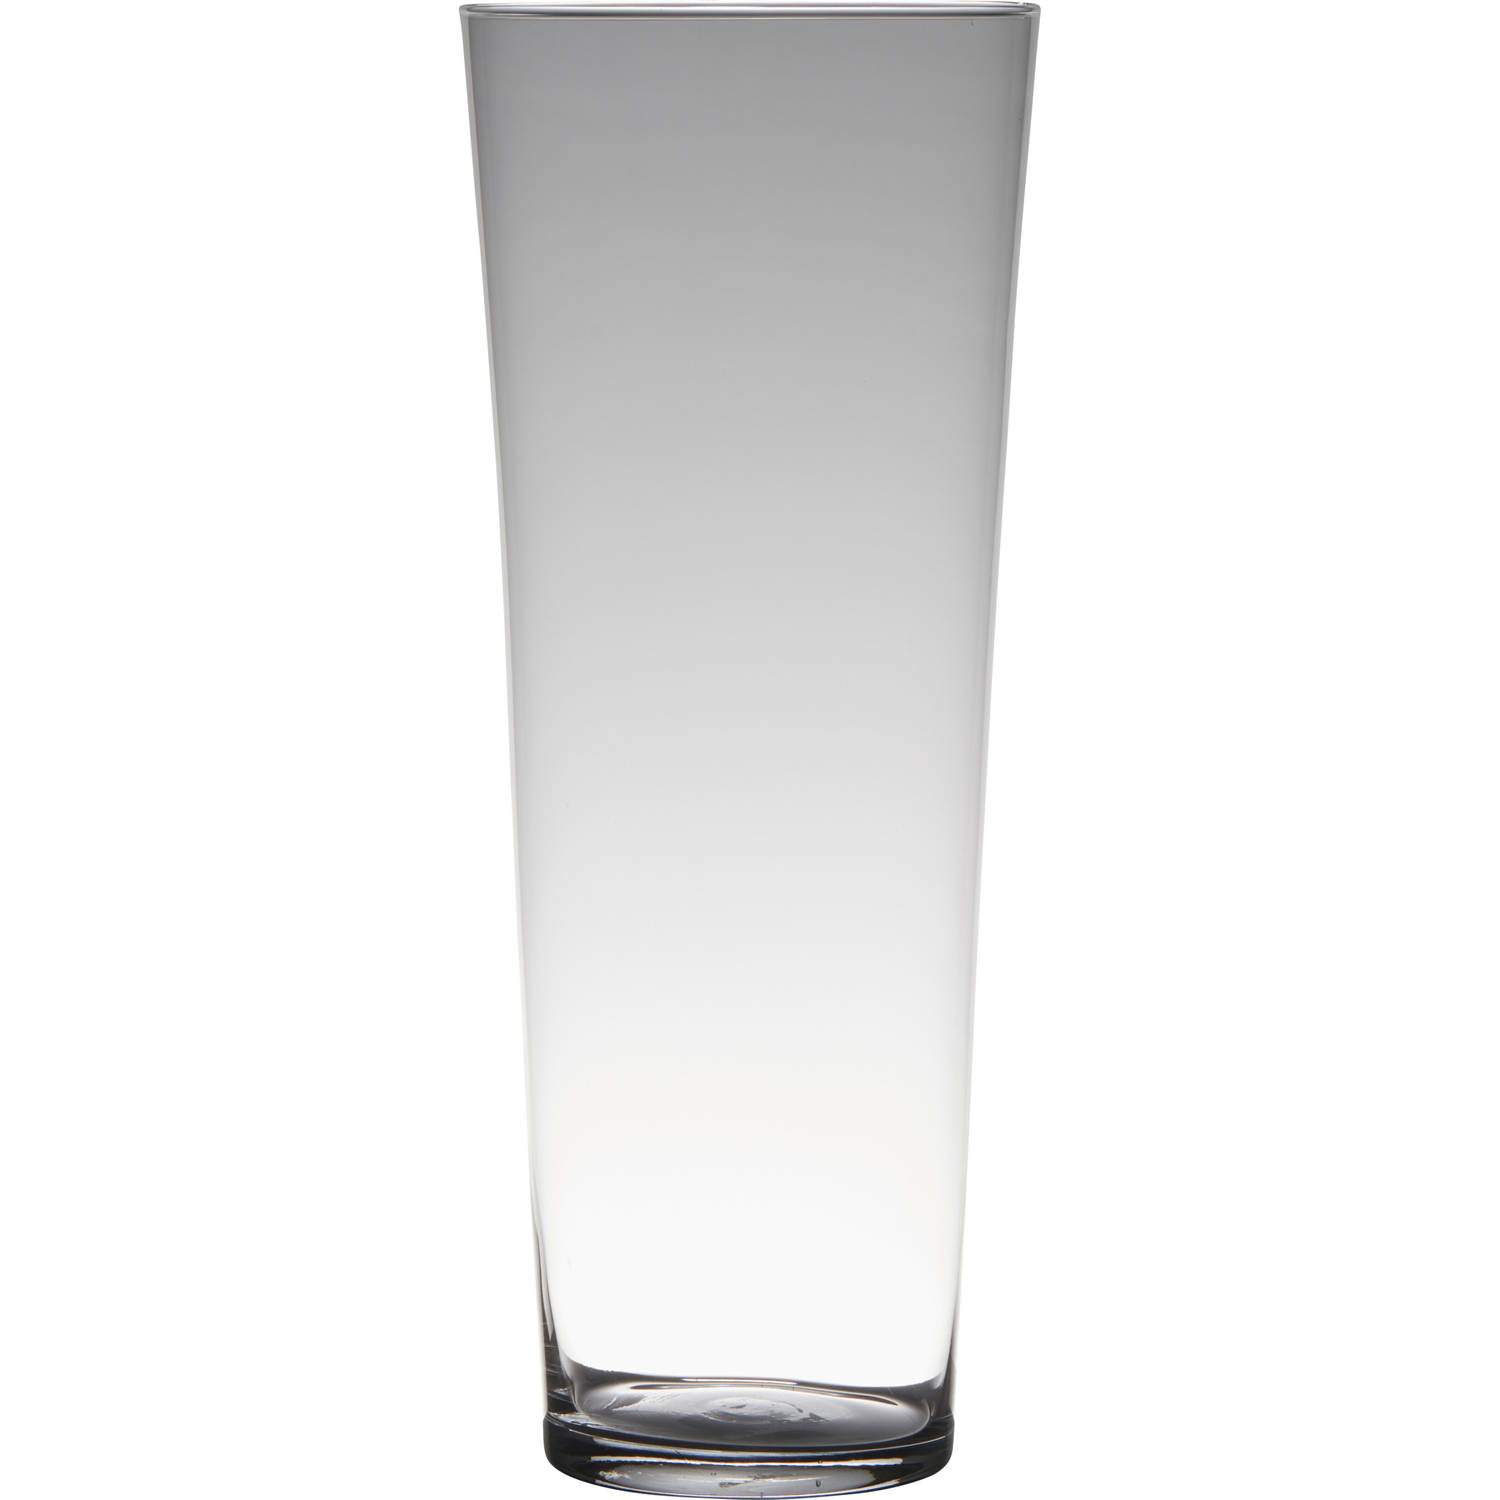 Bellatio Design Transparante Home-basics Conische Vaas/vazen Van Glas 40 X 16.5 Cm - Bloemen/takken/boeketten Vaas Voor Binnen Gebruik